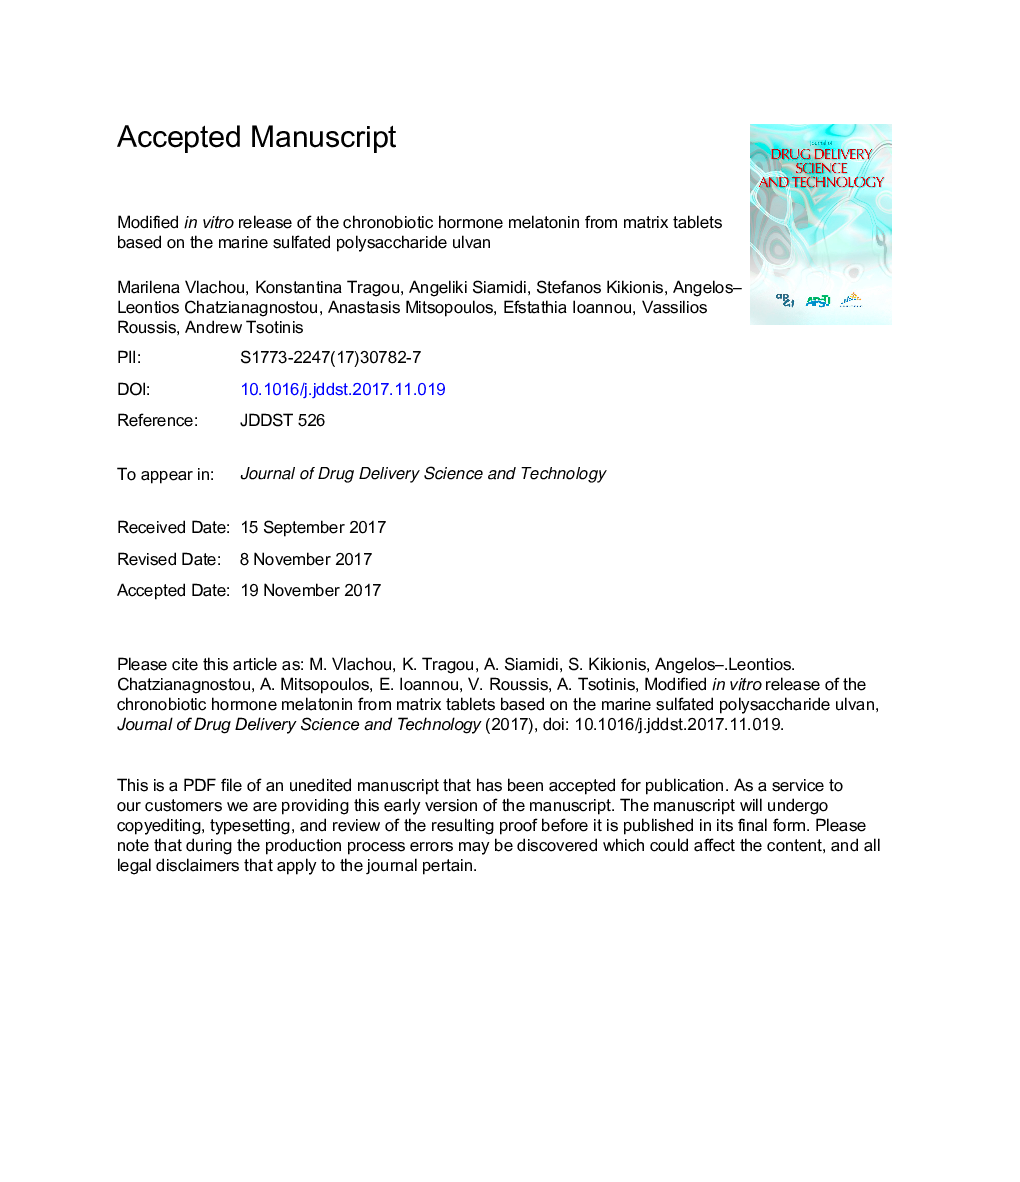 آزمایش آزمایشگاهی هالوژن کرونوبیوتری ملاتونین از طریق ماتریکس قرص براساس سولفات سدیم مونوکلونال الاوان 